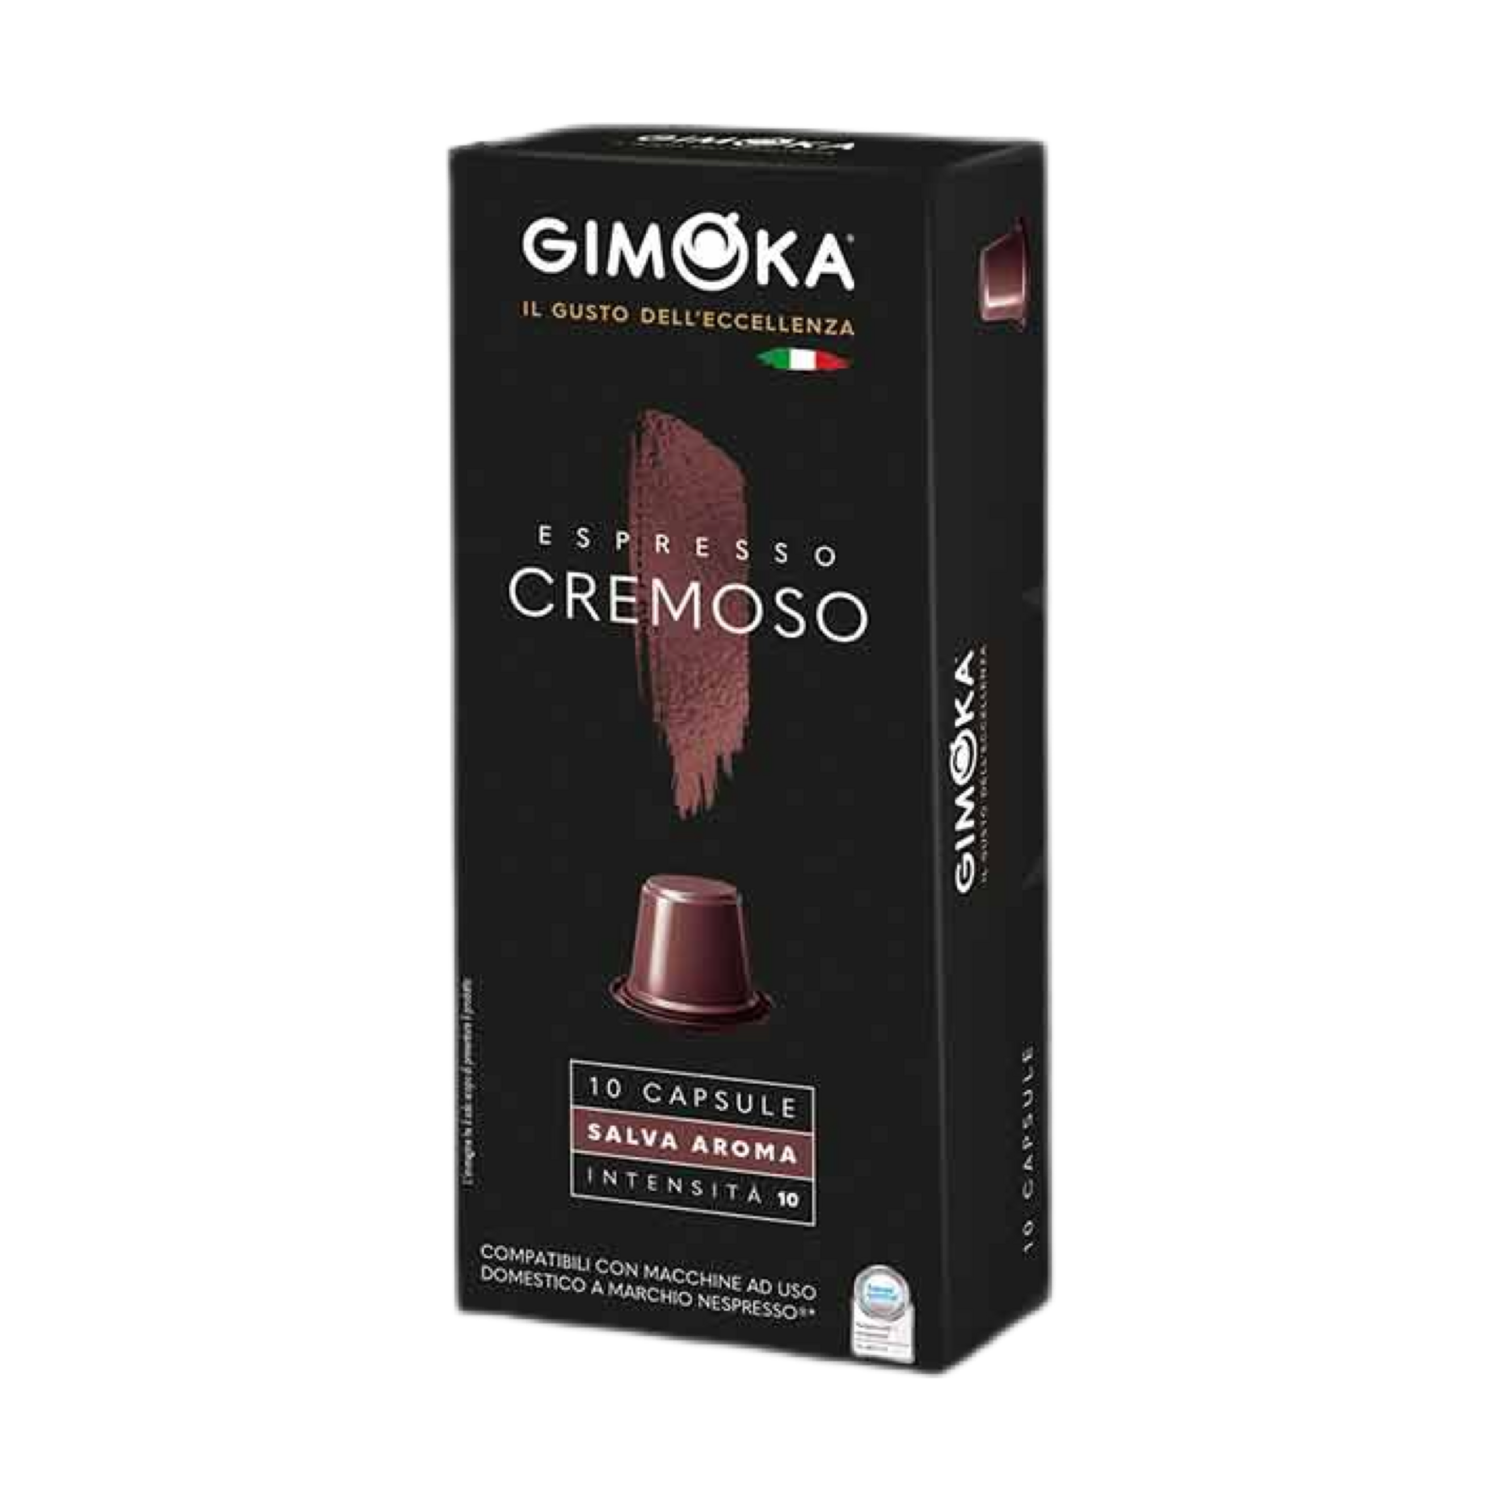 Gimoka Nespresso Cremoso espresso x10 капсули